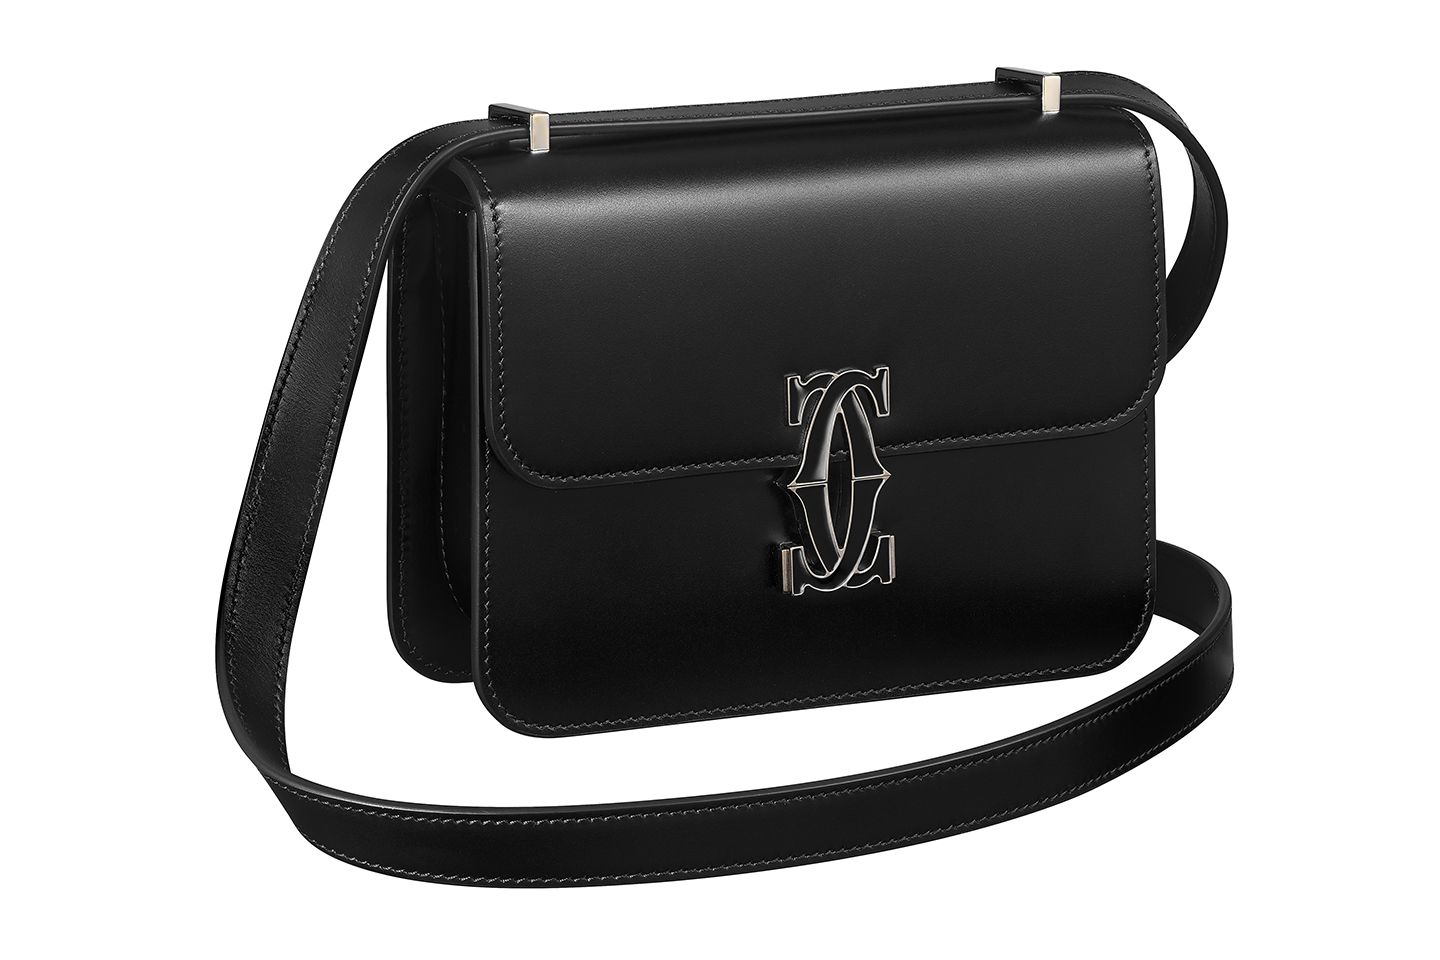 カルティエ伝統の「ドゥーブルC」ロゴがモダンにアップデートされた上品な新作バッグが登場 | Precious.jp（プレシャス）